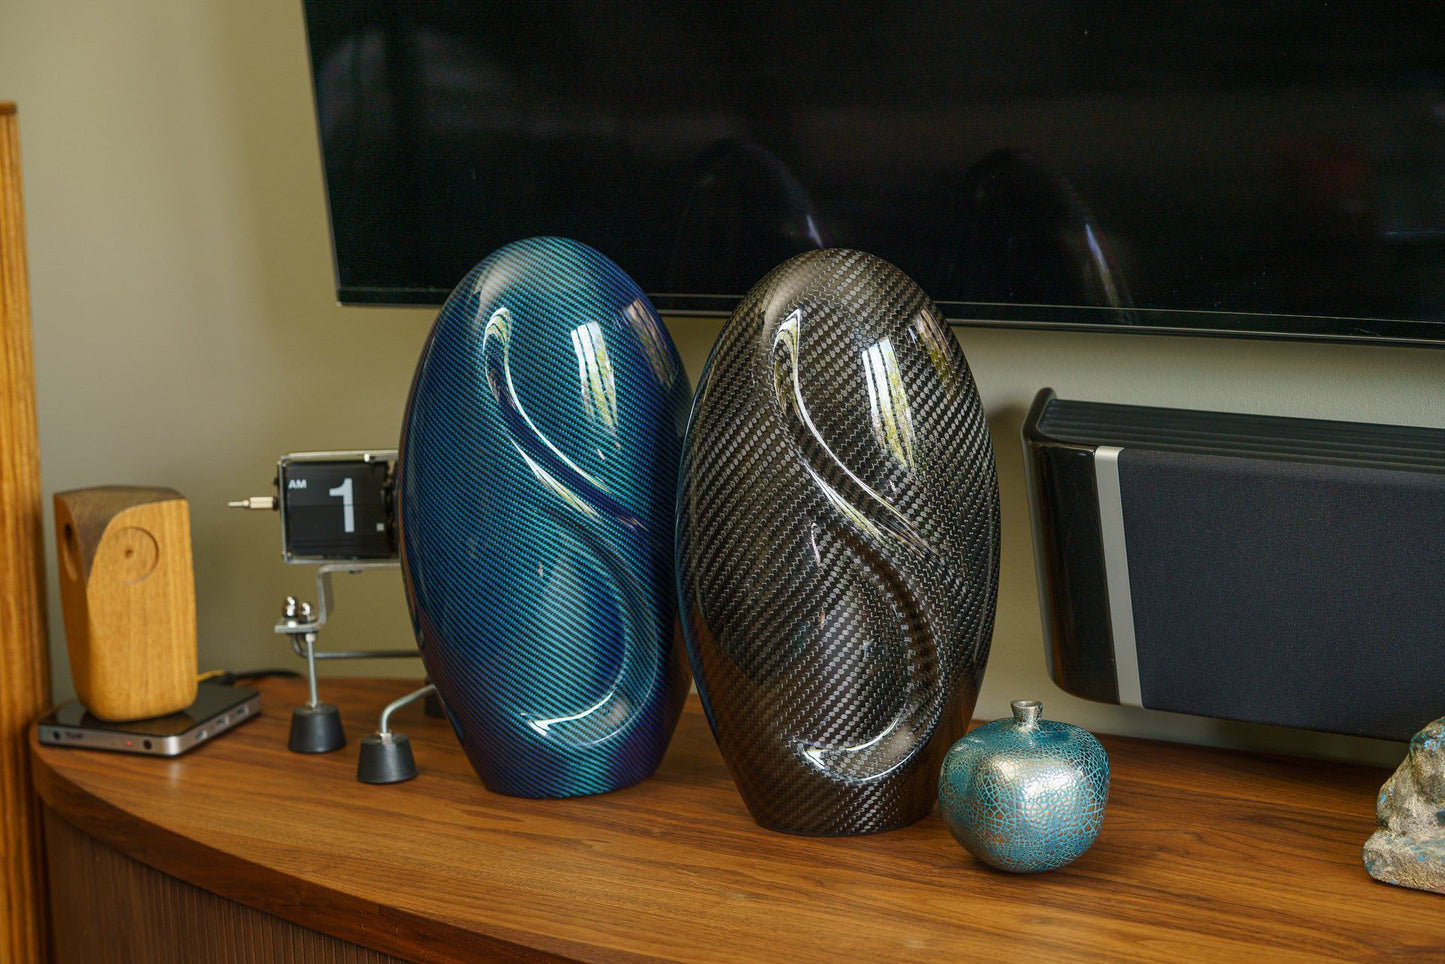 Pulvis Art Urns Adult Size Urn Carbon Fiber Cremation Urn "Eternity" - Twill Weave Carbon | Blue